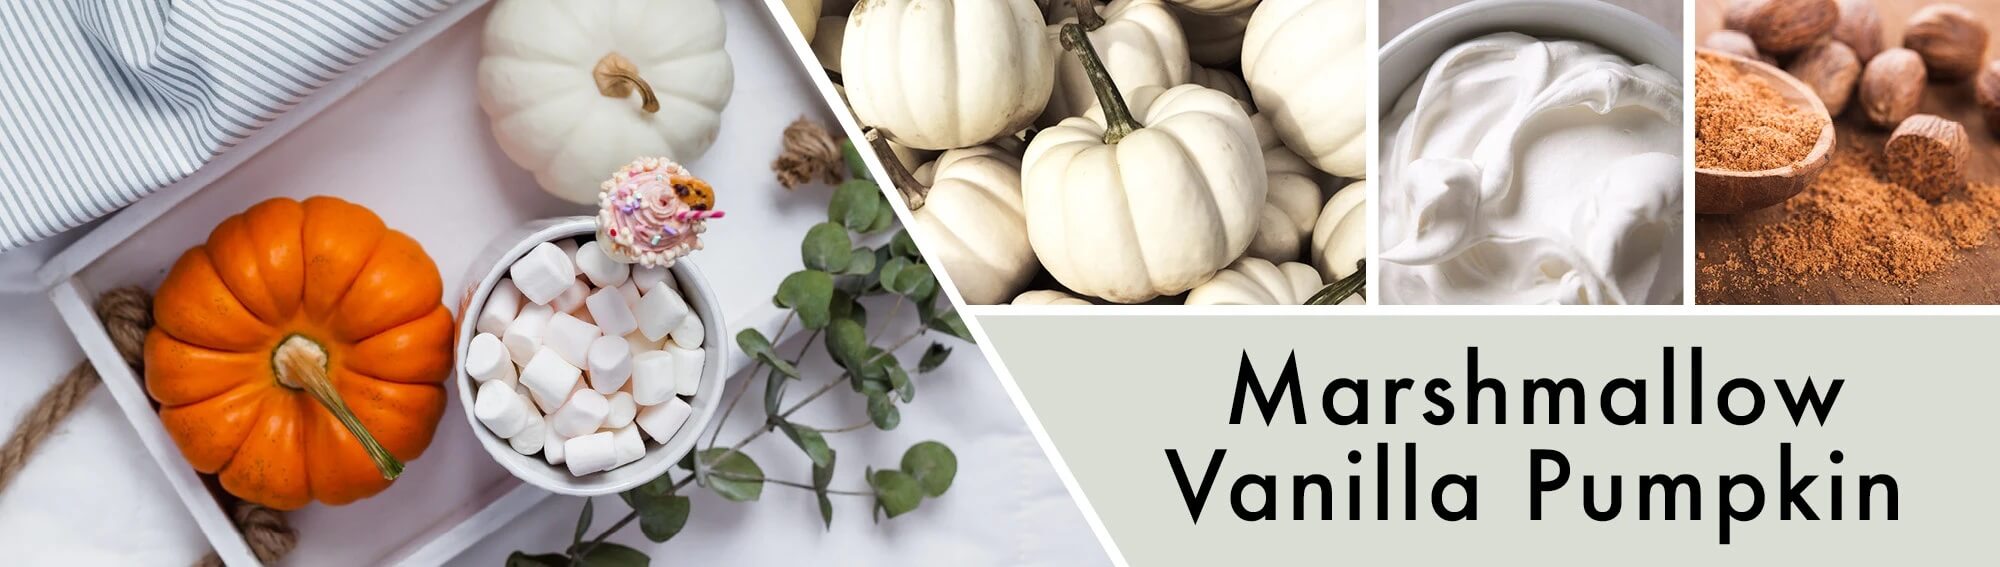 Marshmallow-Vanilla-Pumpkin-Banner